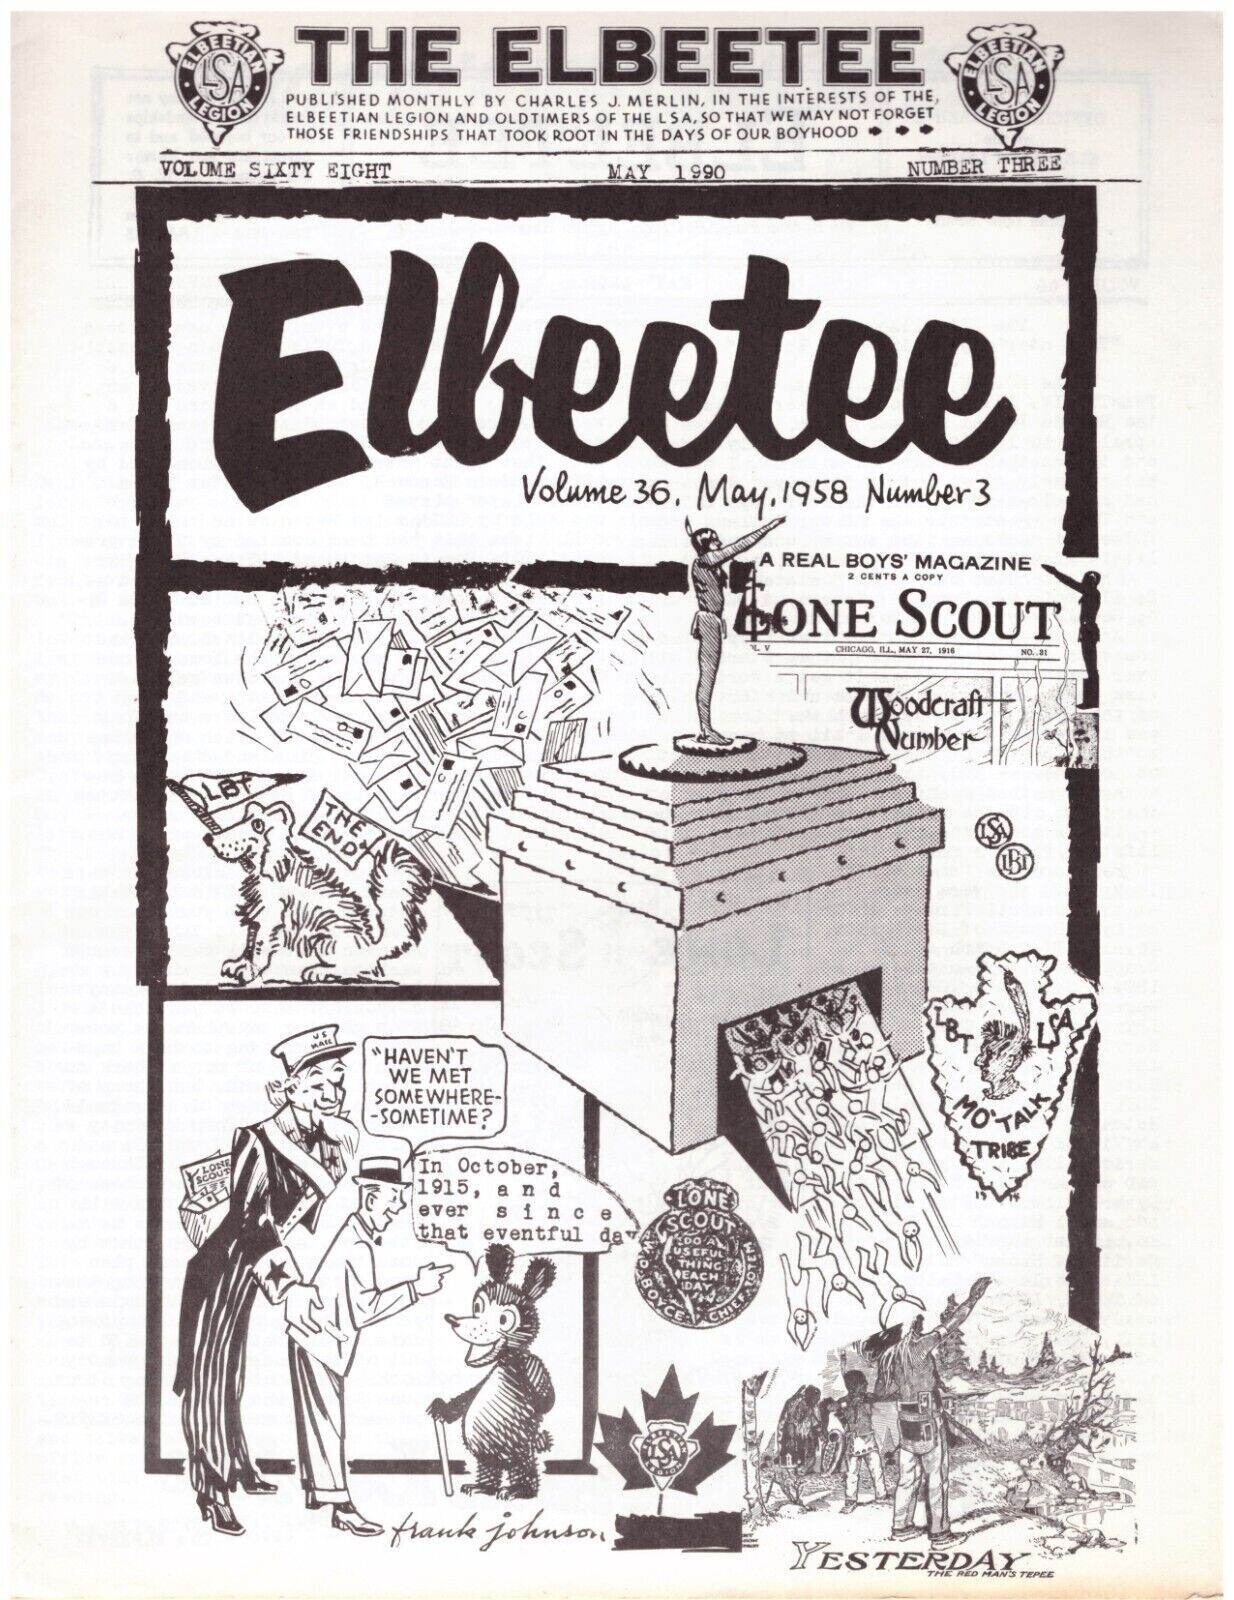 Lone Scouts - Elbeetee  Vol. 68 No. 3 May 1990 - Very good condition -